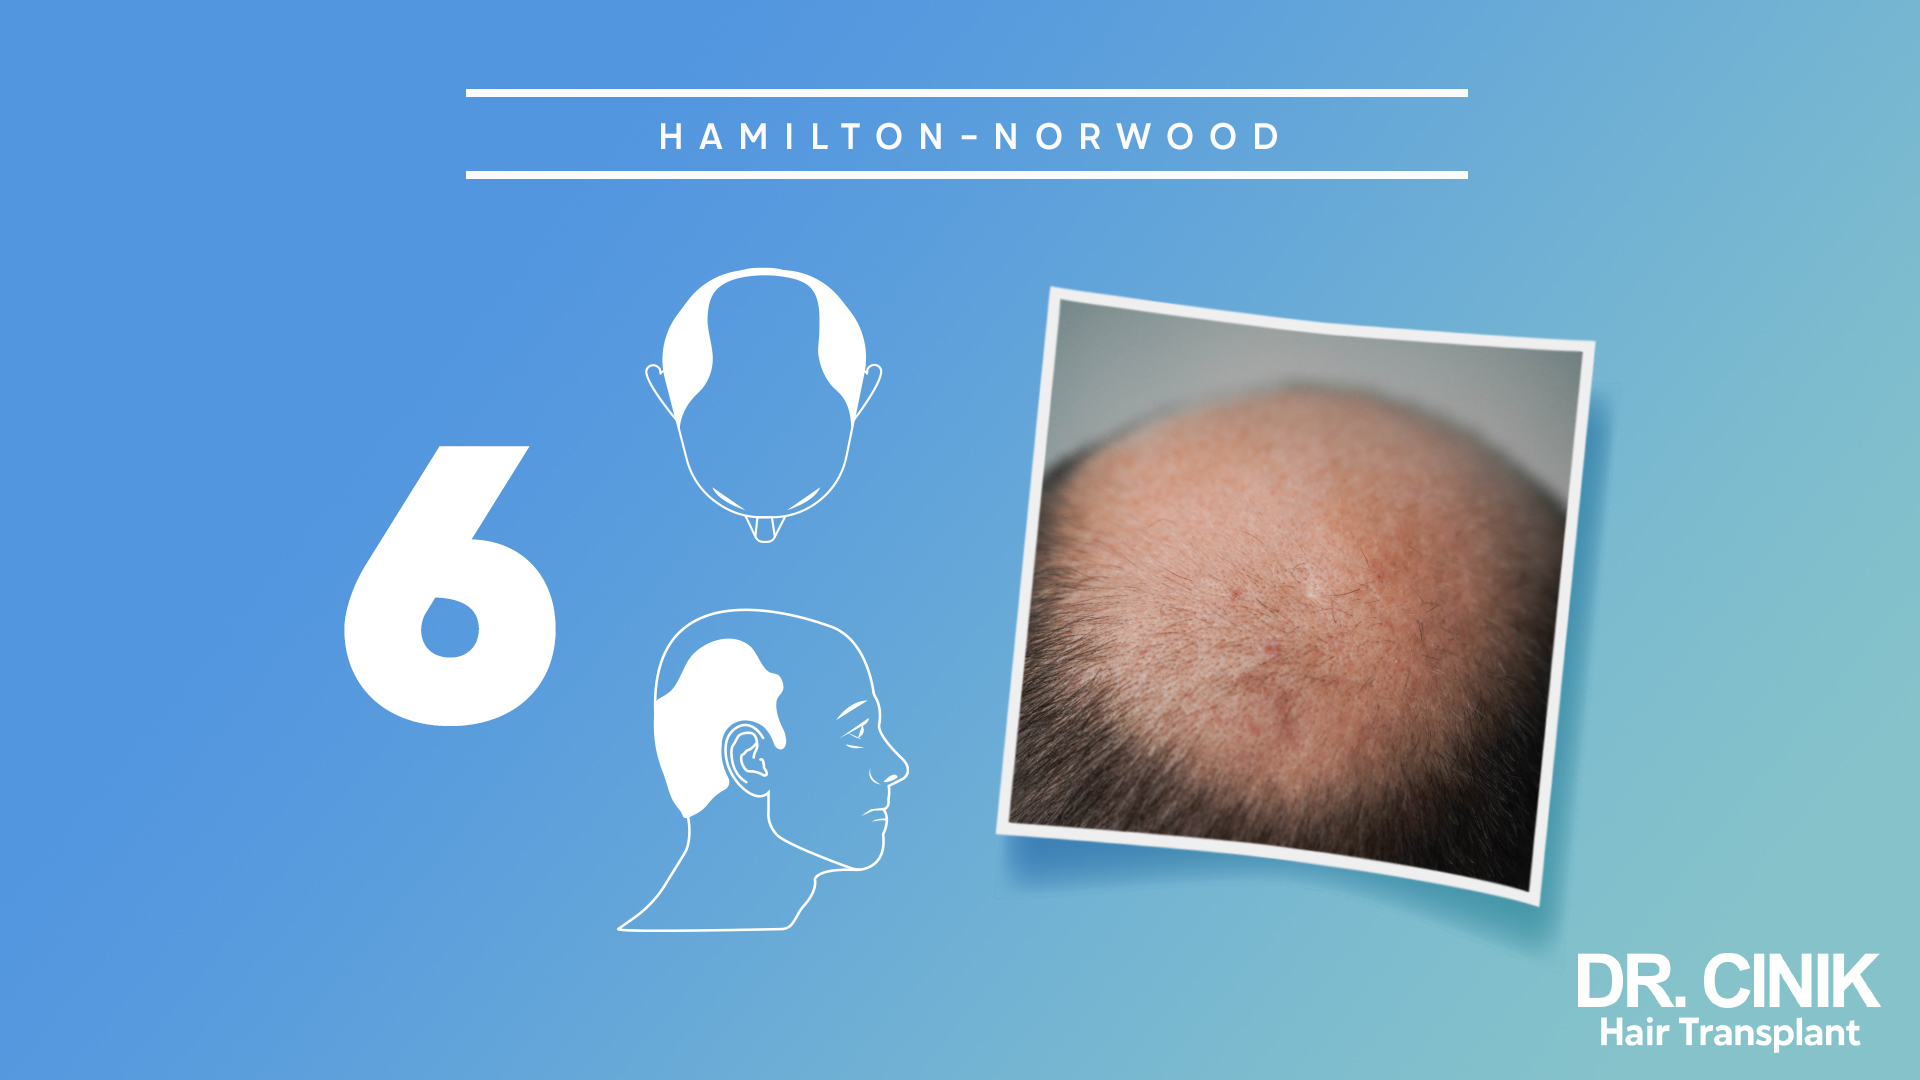 Esta imagen muestra la etapa 6 de la escala "HAMILTON-NORWOOD", que se utiliza para clasificar los niveles de pérdida de cabello en hombres.